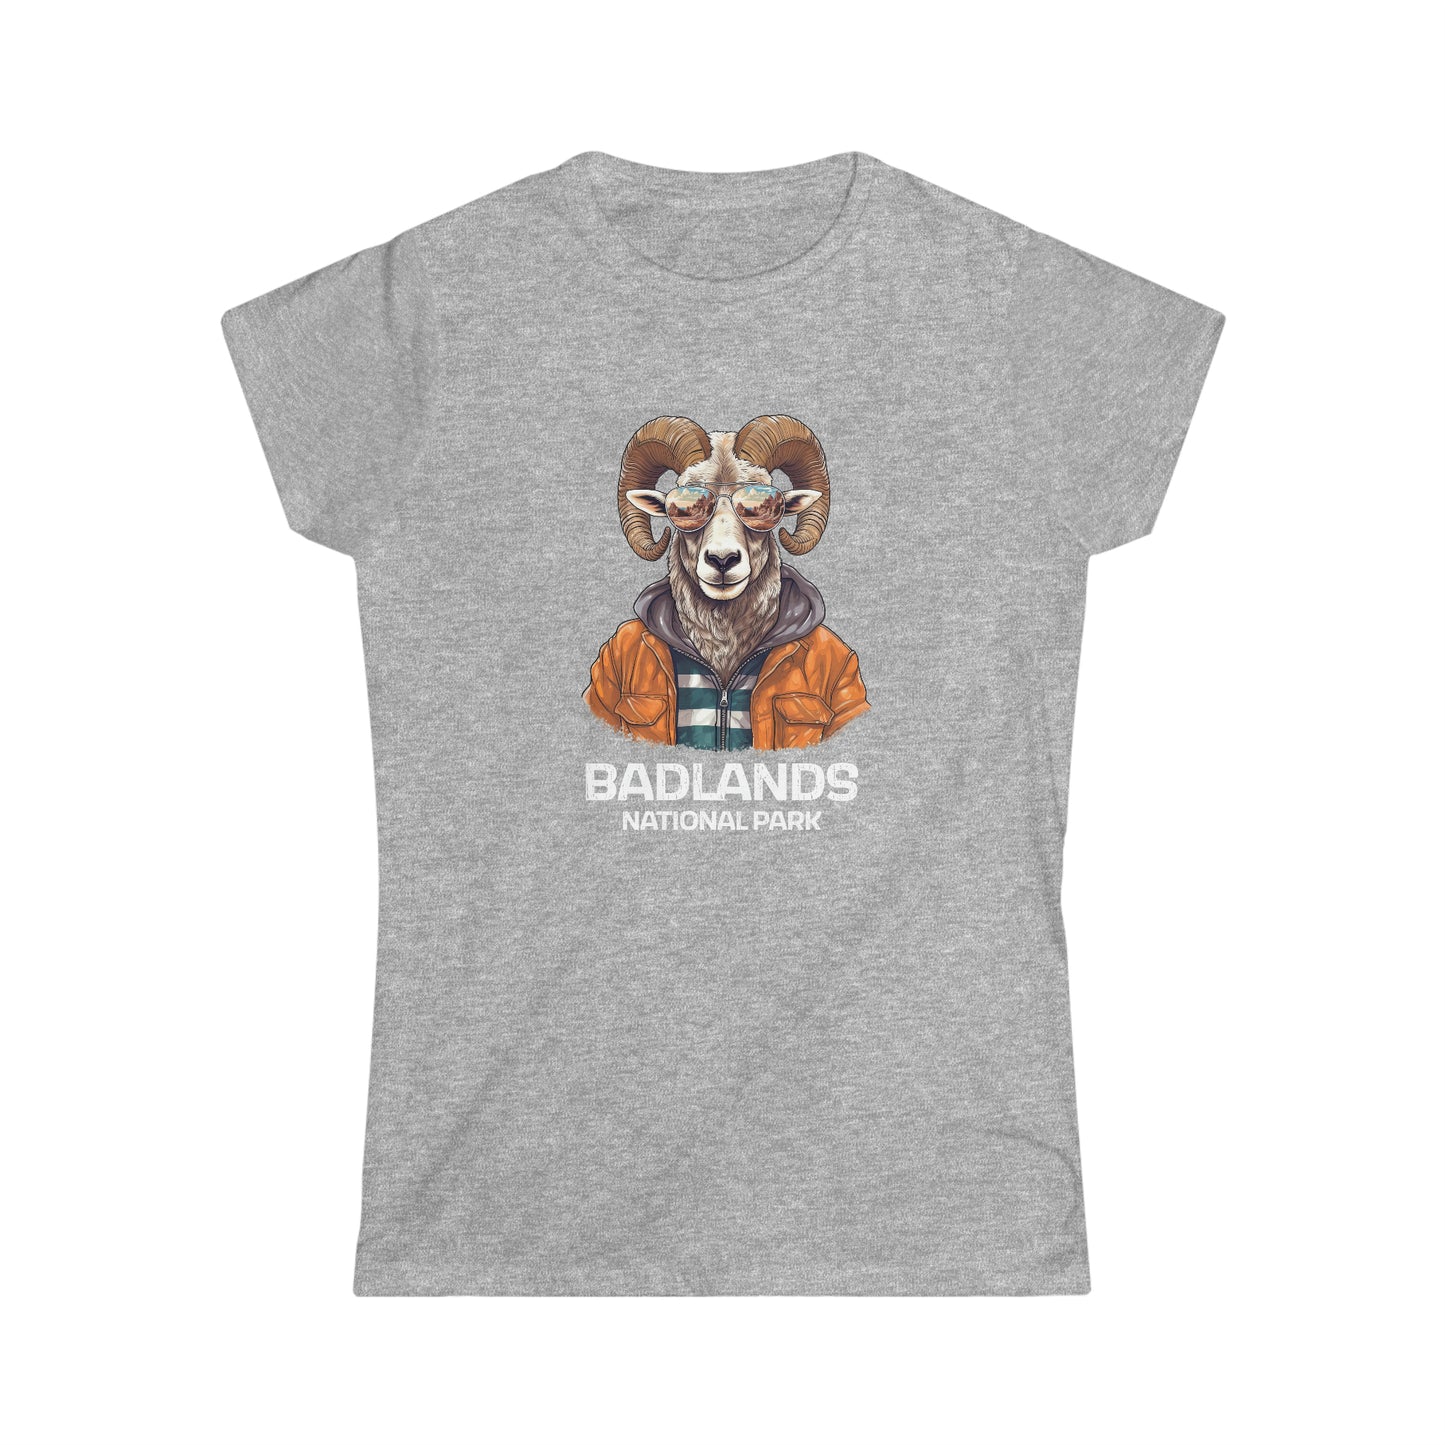 Badlands National Park Women's T-Shirt - Cool Bighorn Sheep